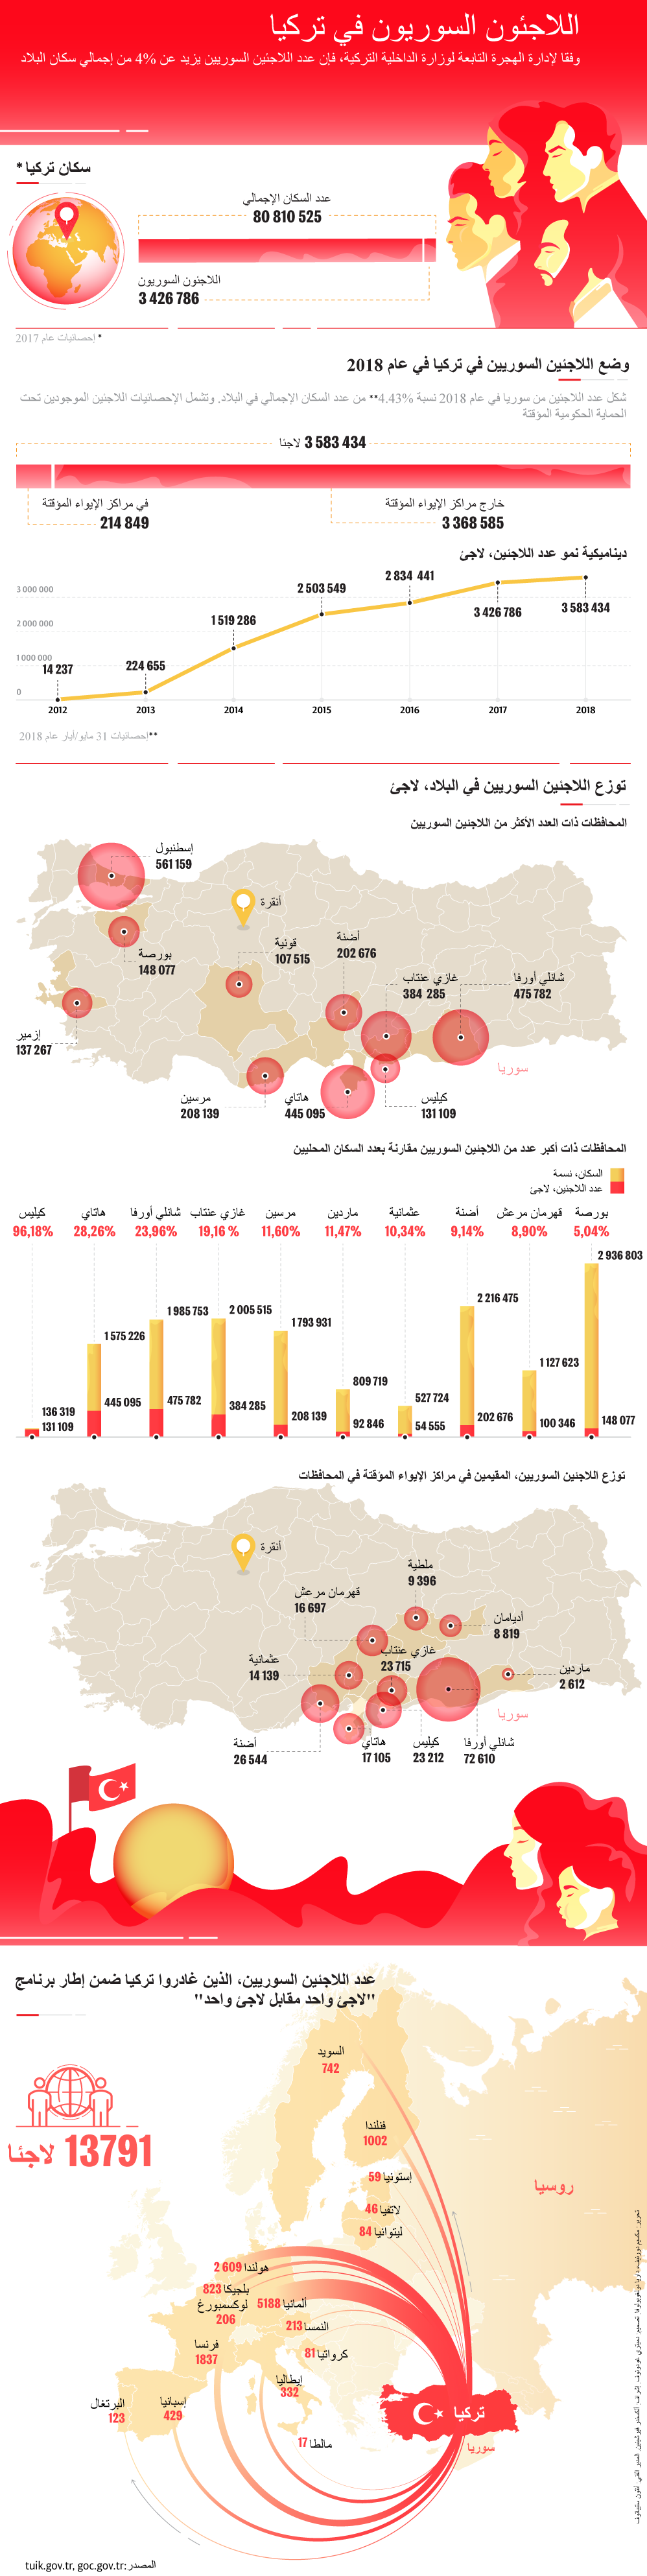 اللاجئون السوريون في تركيا - سبوتنيك عربي